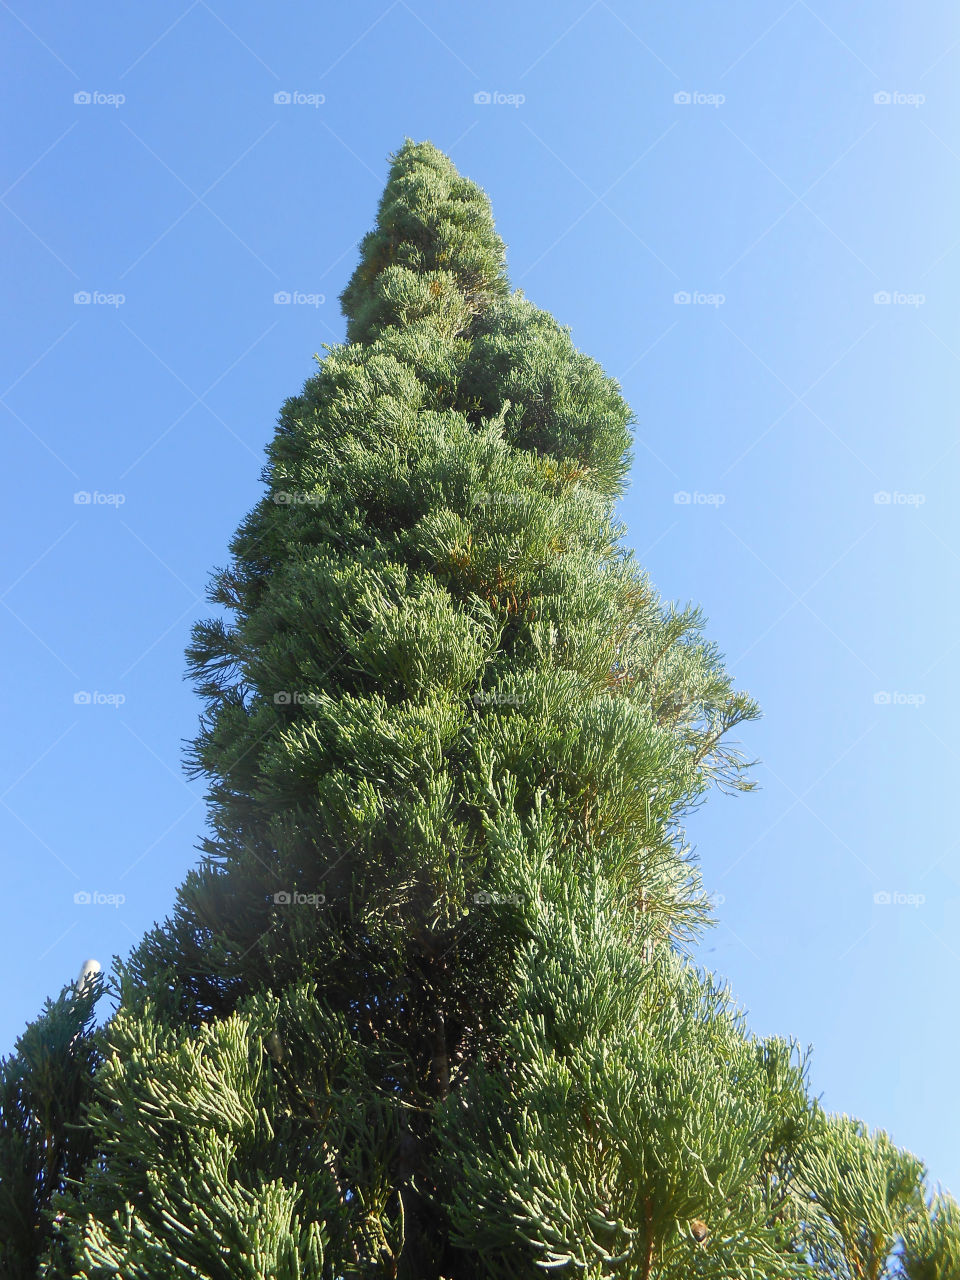 Very Tall Tree